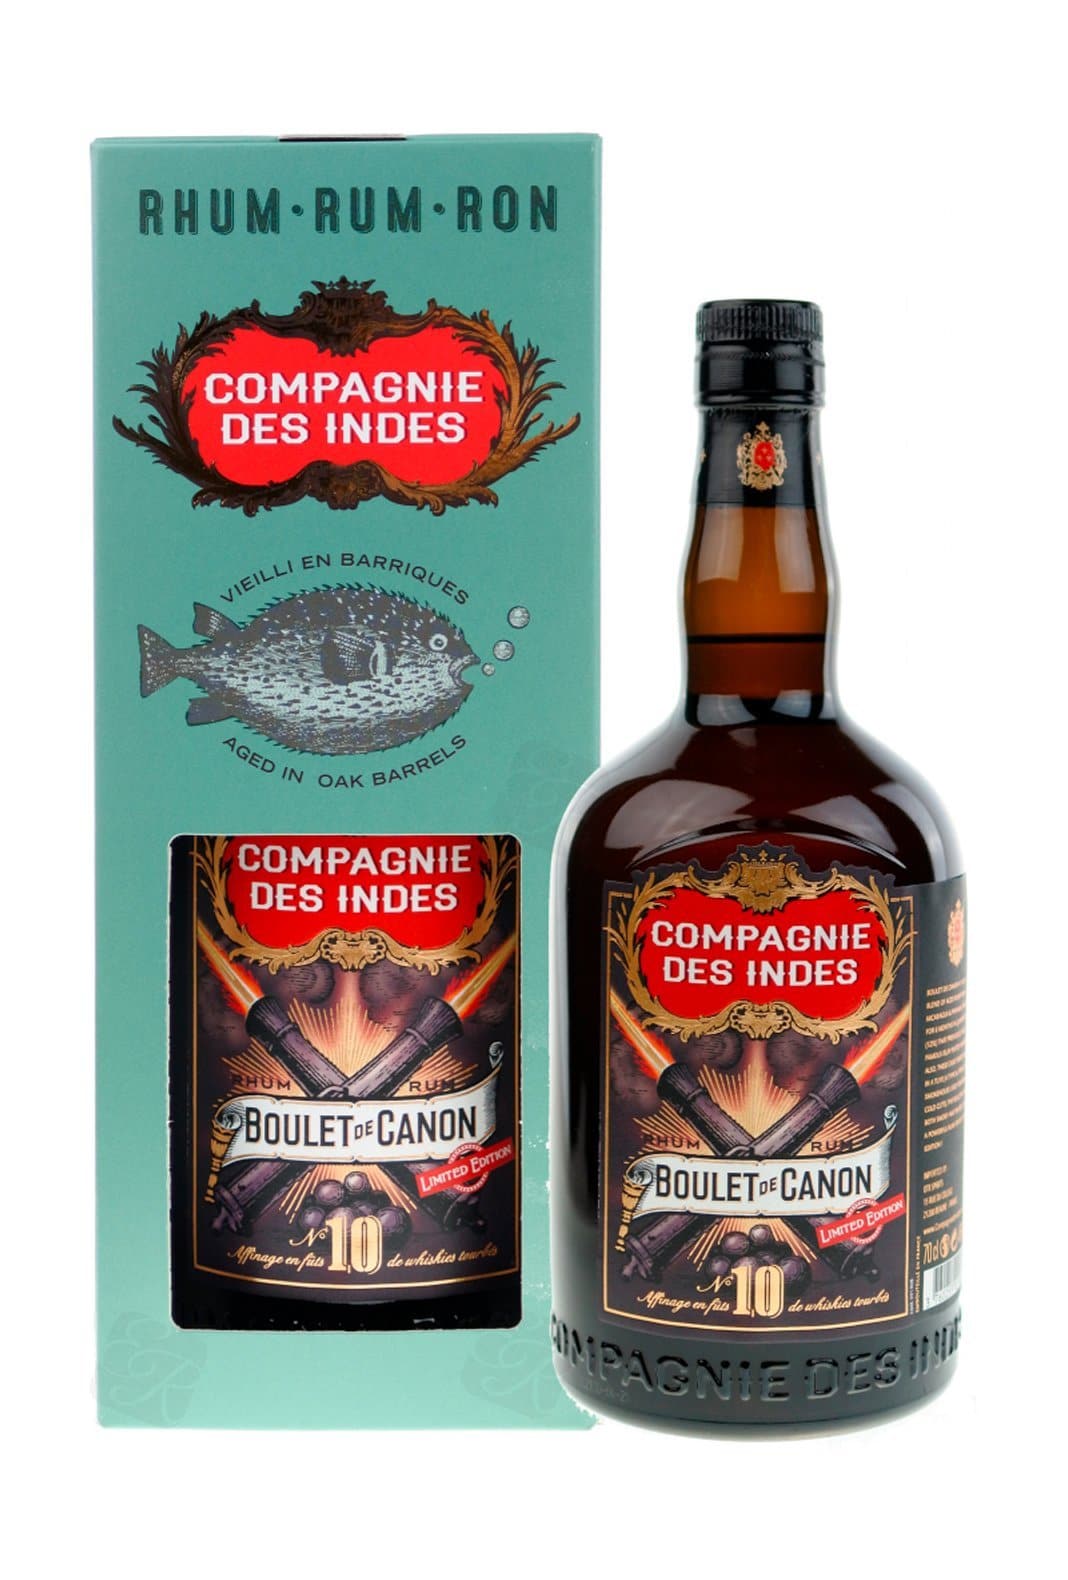 Compagnie des Indes Rum Boulet de Canon No.10 46% 700ml | Rum | Shop online at Spirits of France